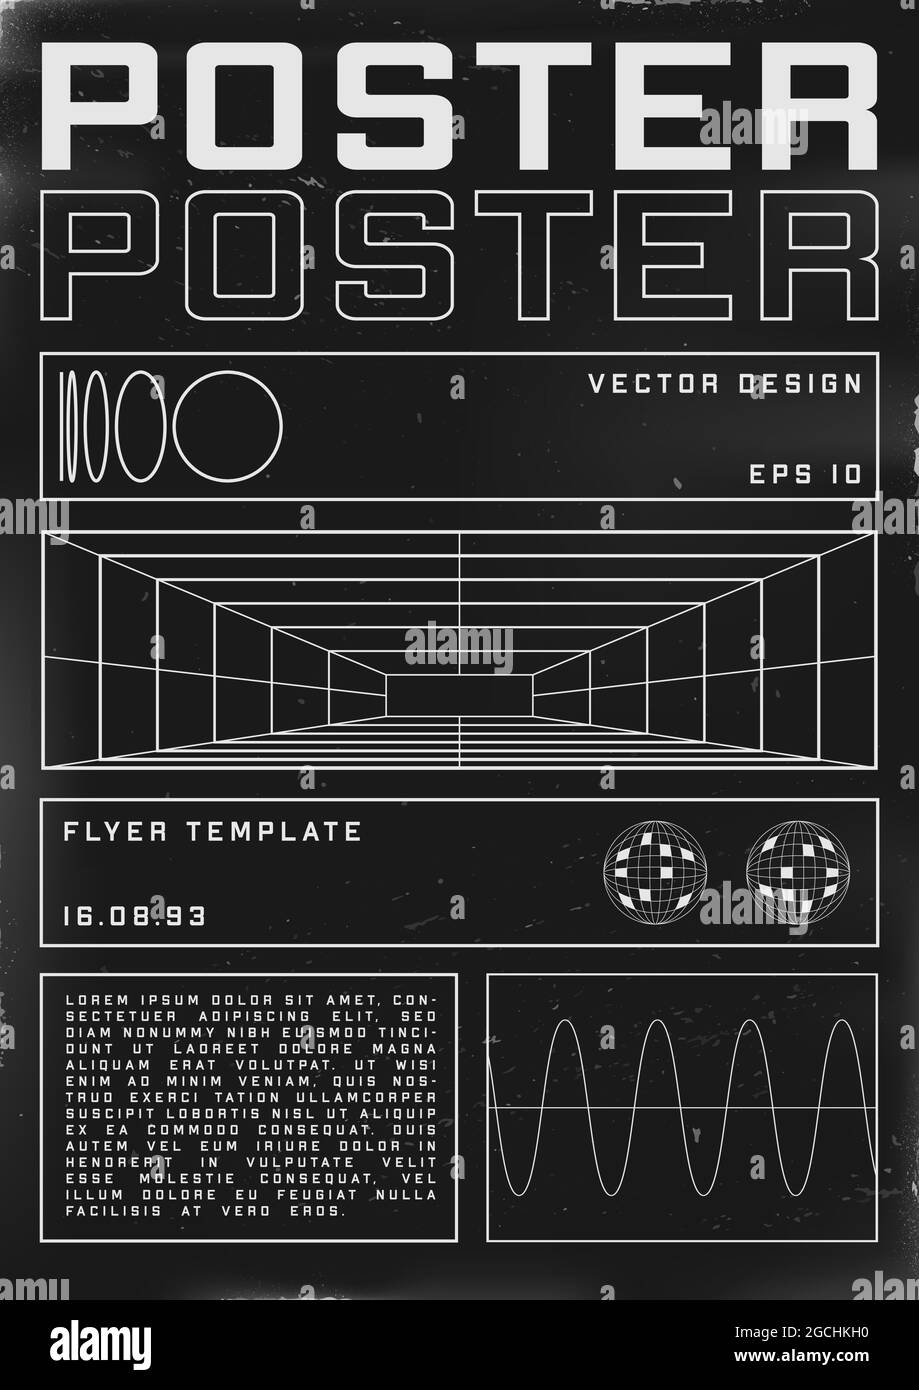 Poster dal design retrovuturistico con tunnel a griglia in prospettiva. Poster in stile cyberpunk degli anni '80 con forme retrofuturistiche. Modello shabby graffiato flyer Illustrazione Vettoriale